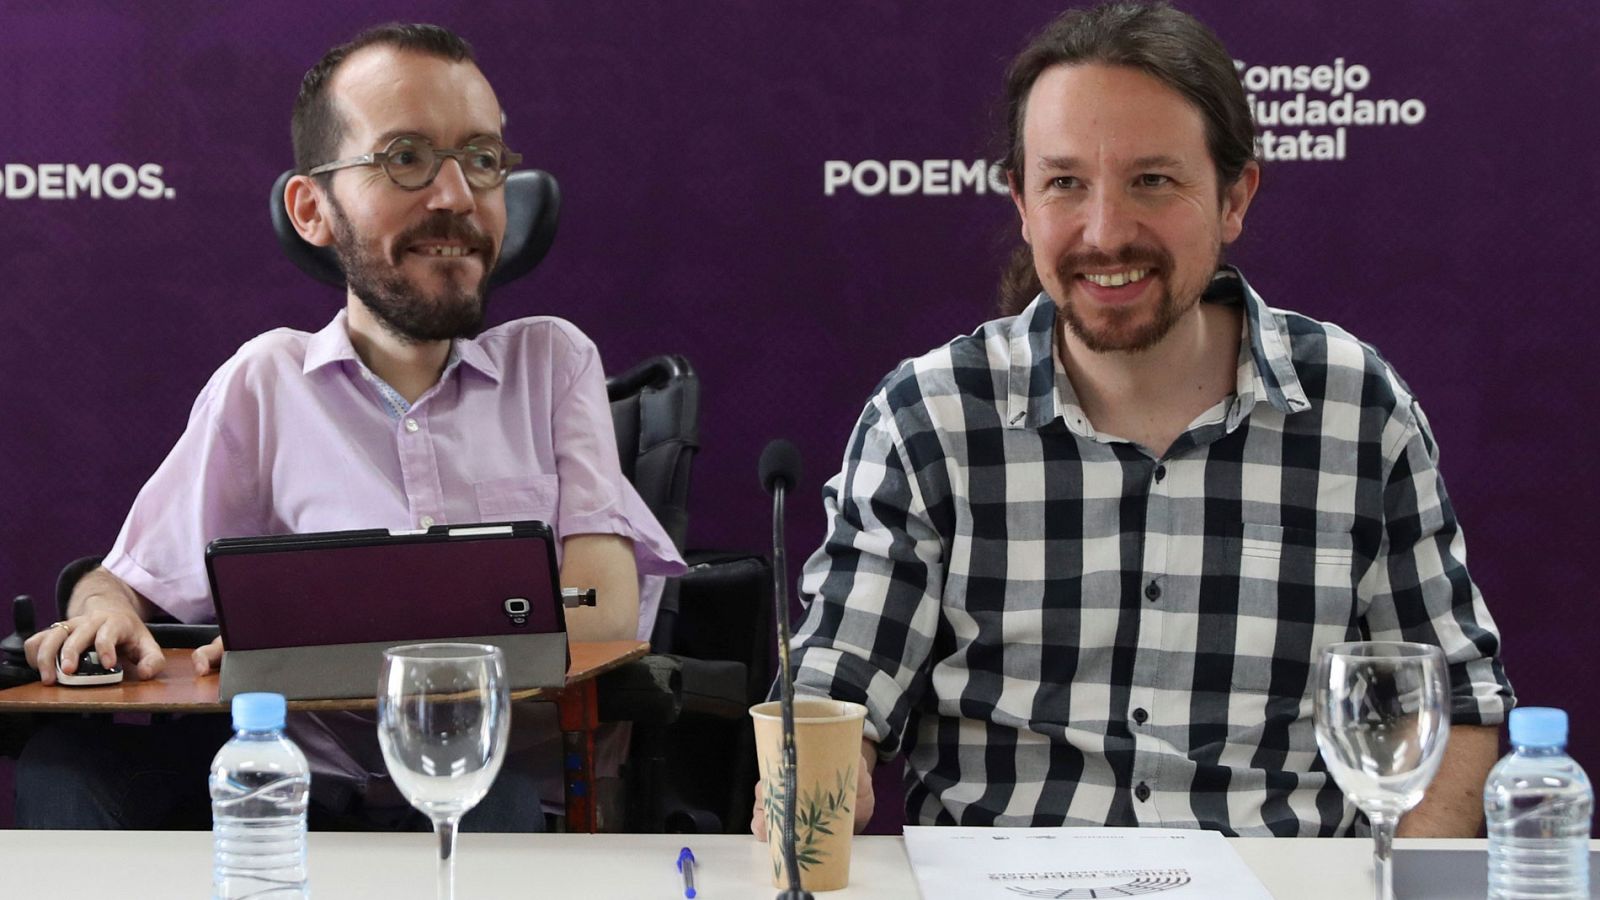 Podemos: Pablo Iglesias aparta a Echenique de la Secretaría de Organización de Podemos - RTVE.es